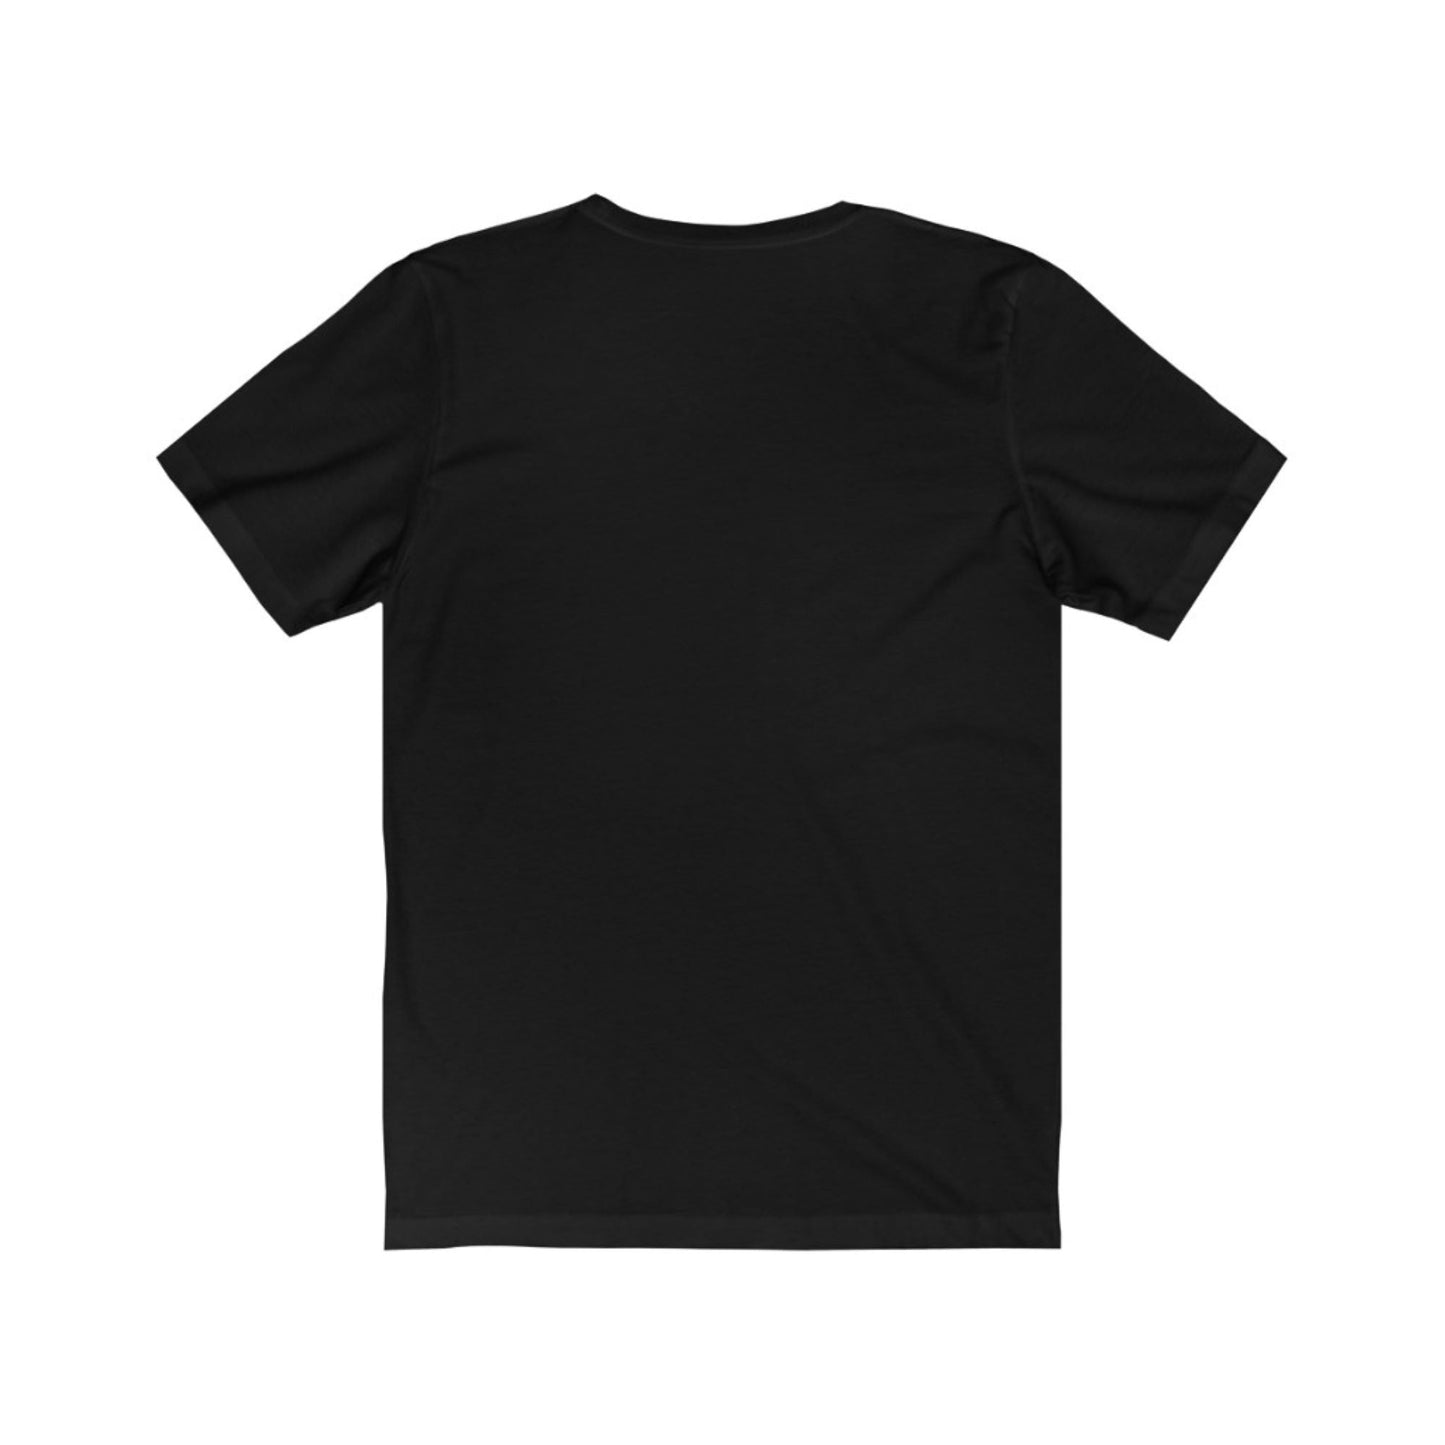 Singer T-Shirt | Singer Gift Idea T-Shirt Petrova Designs